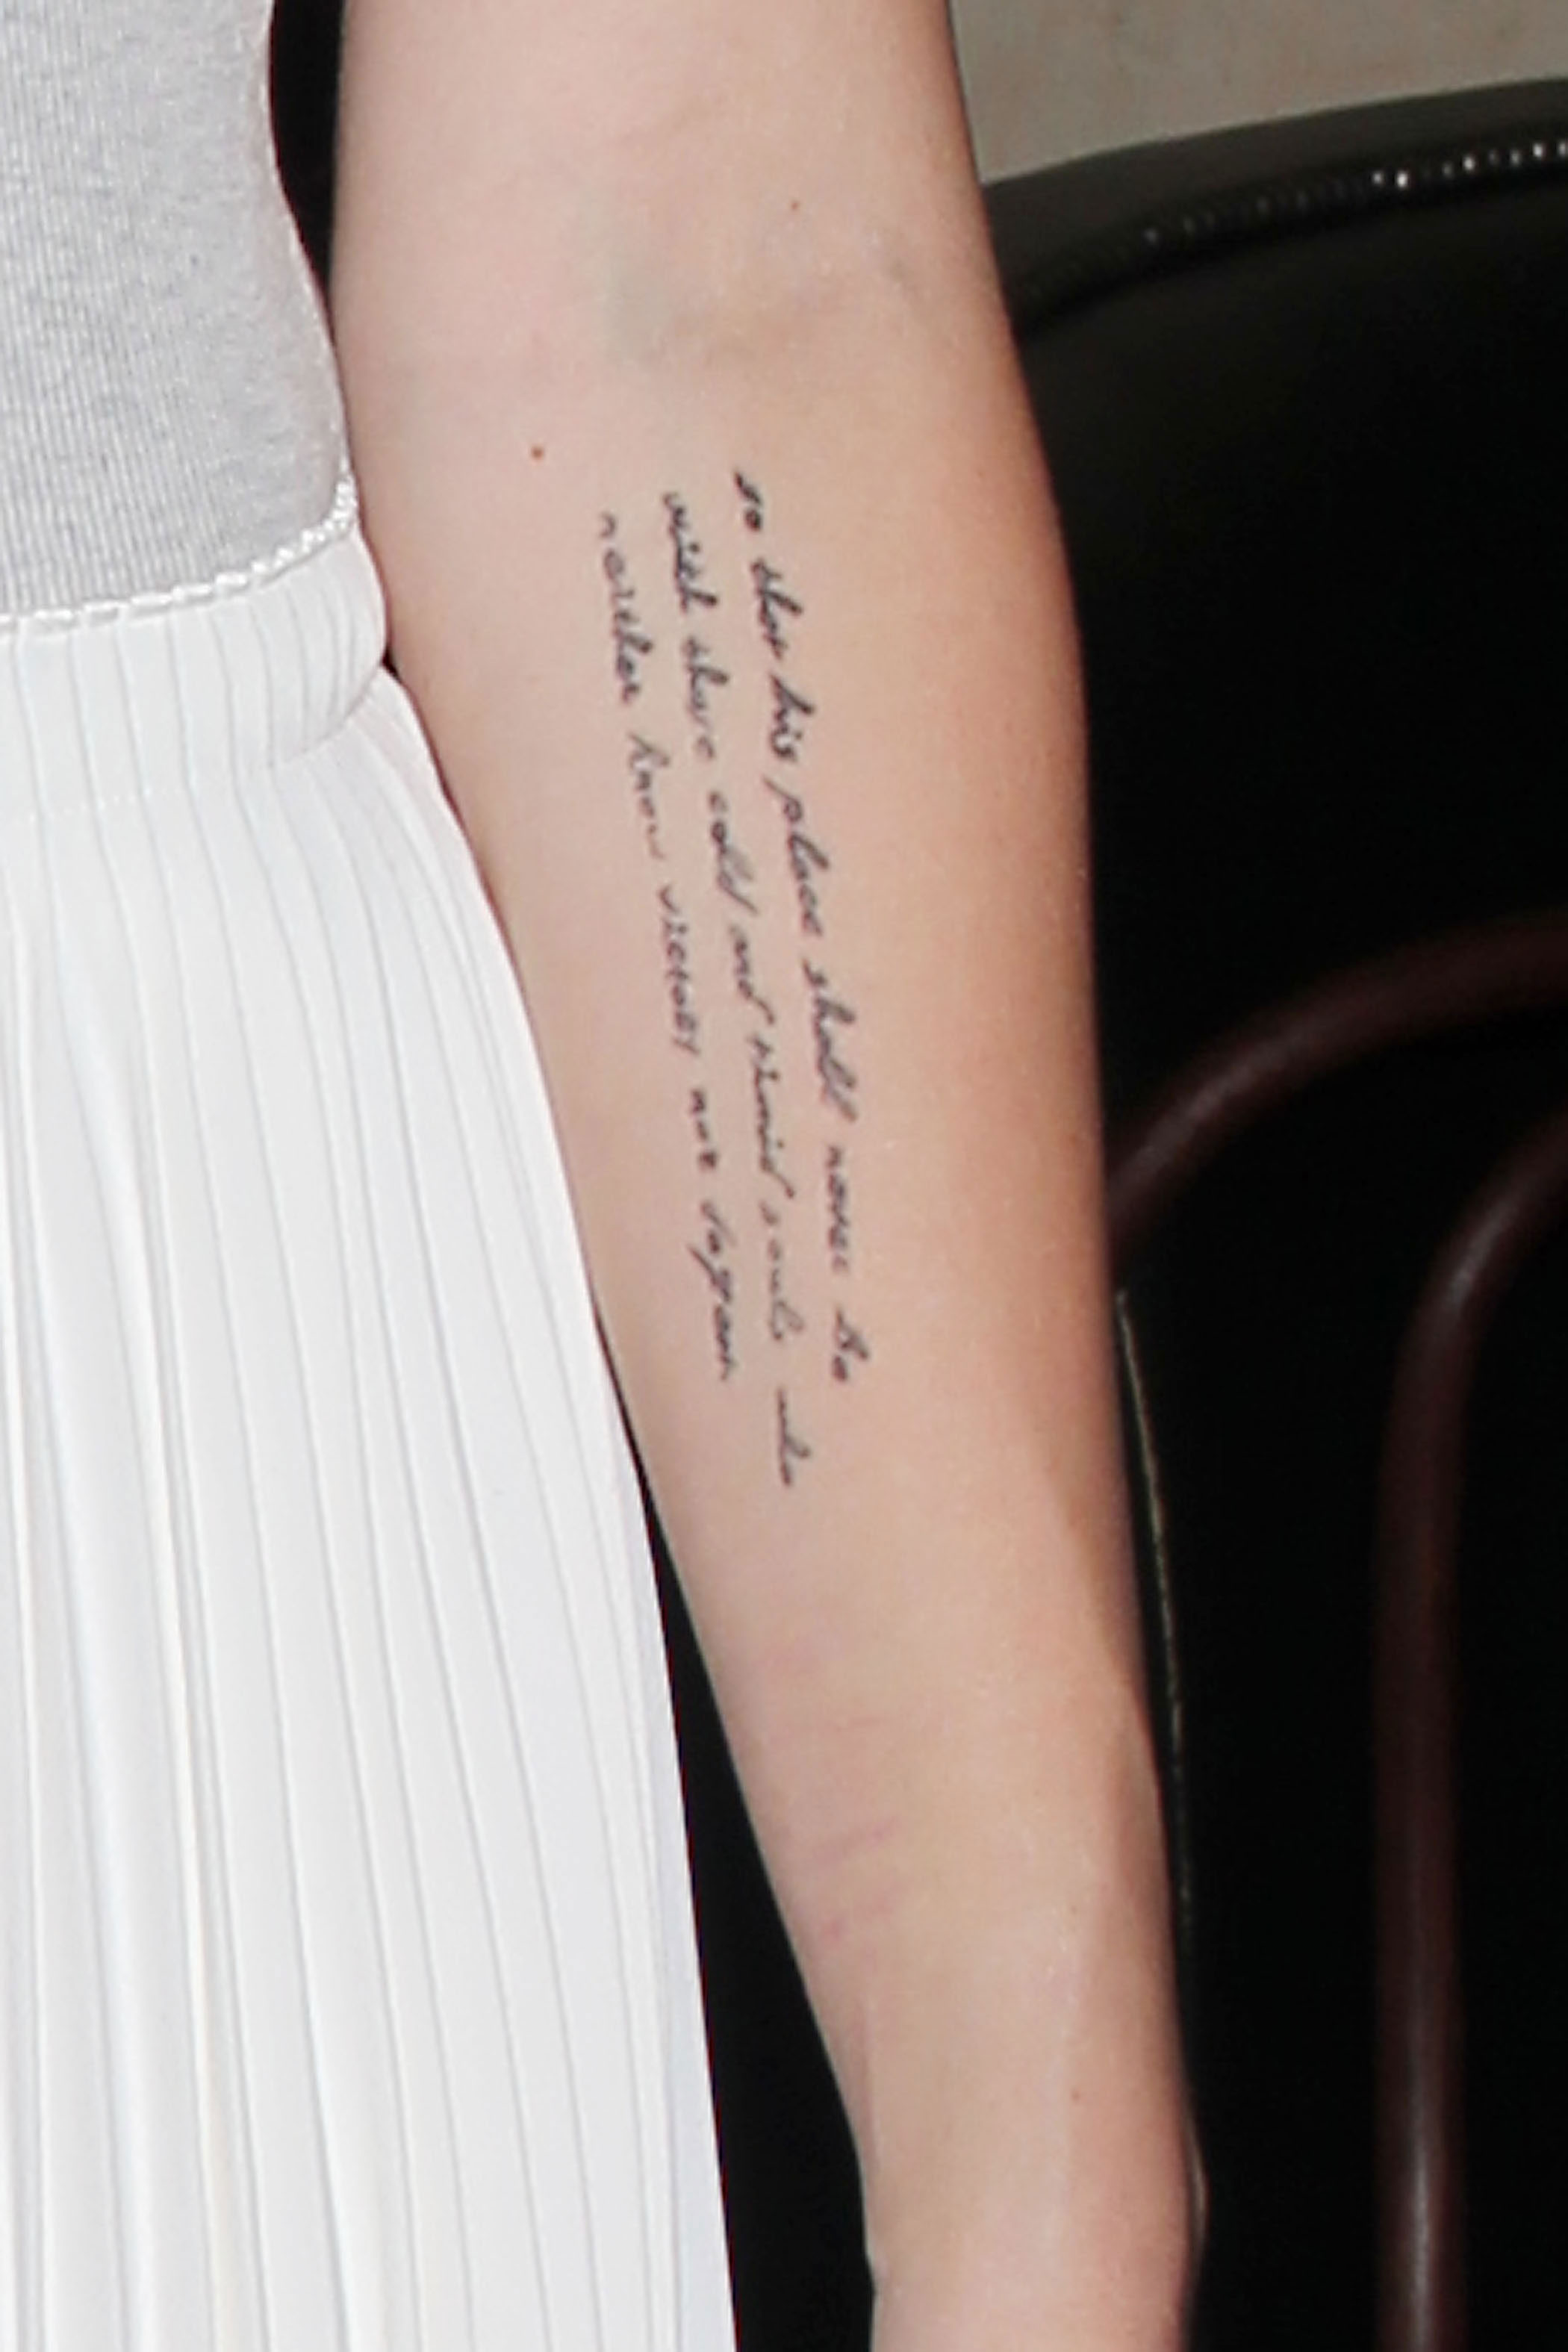 Miley Cyrus Tattoos Complete Breakdown Of Ink Designs' Meanings